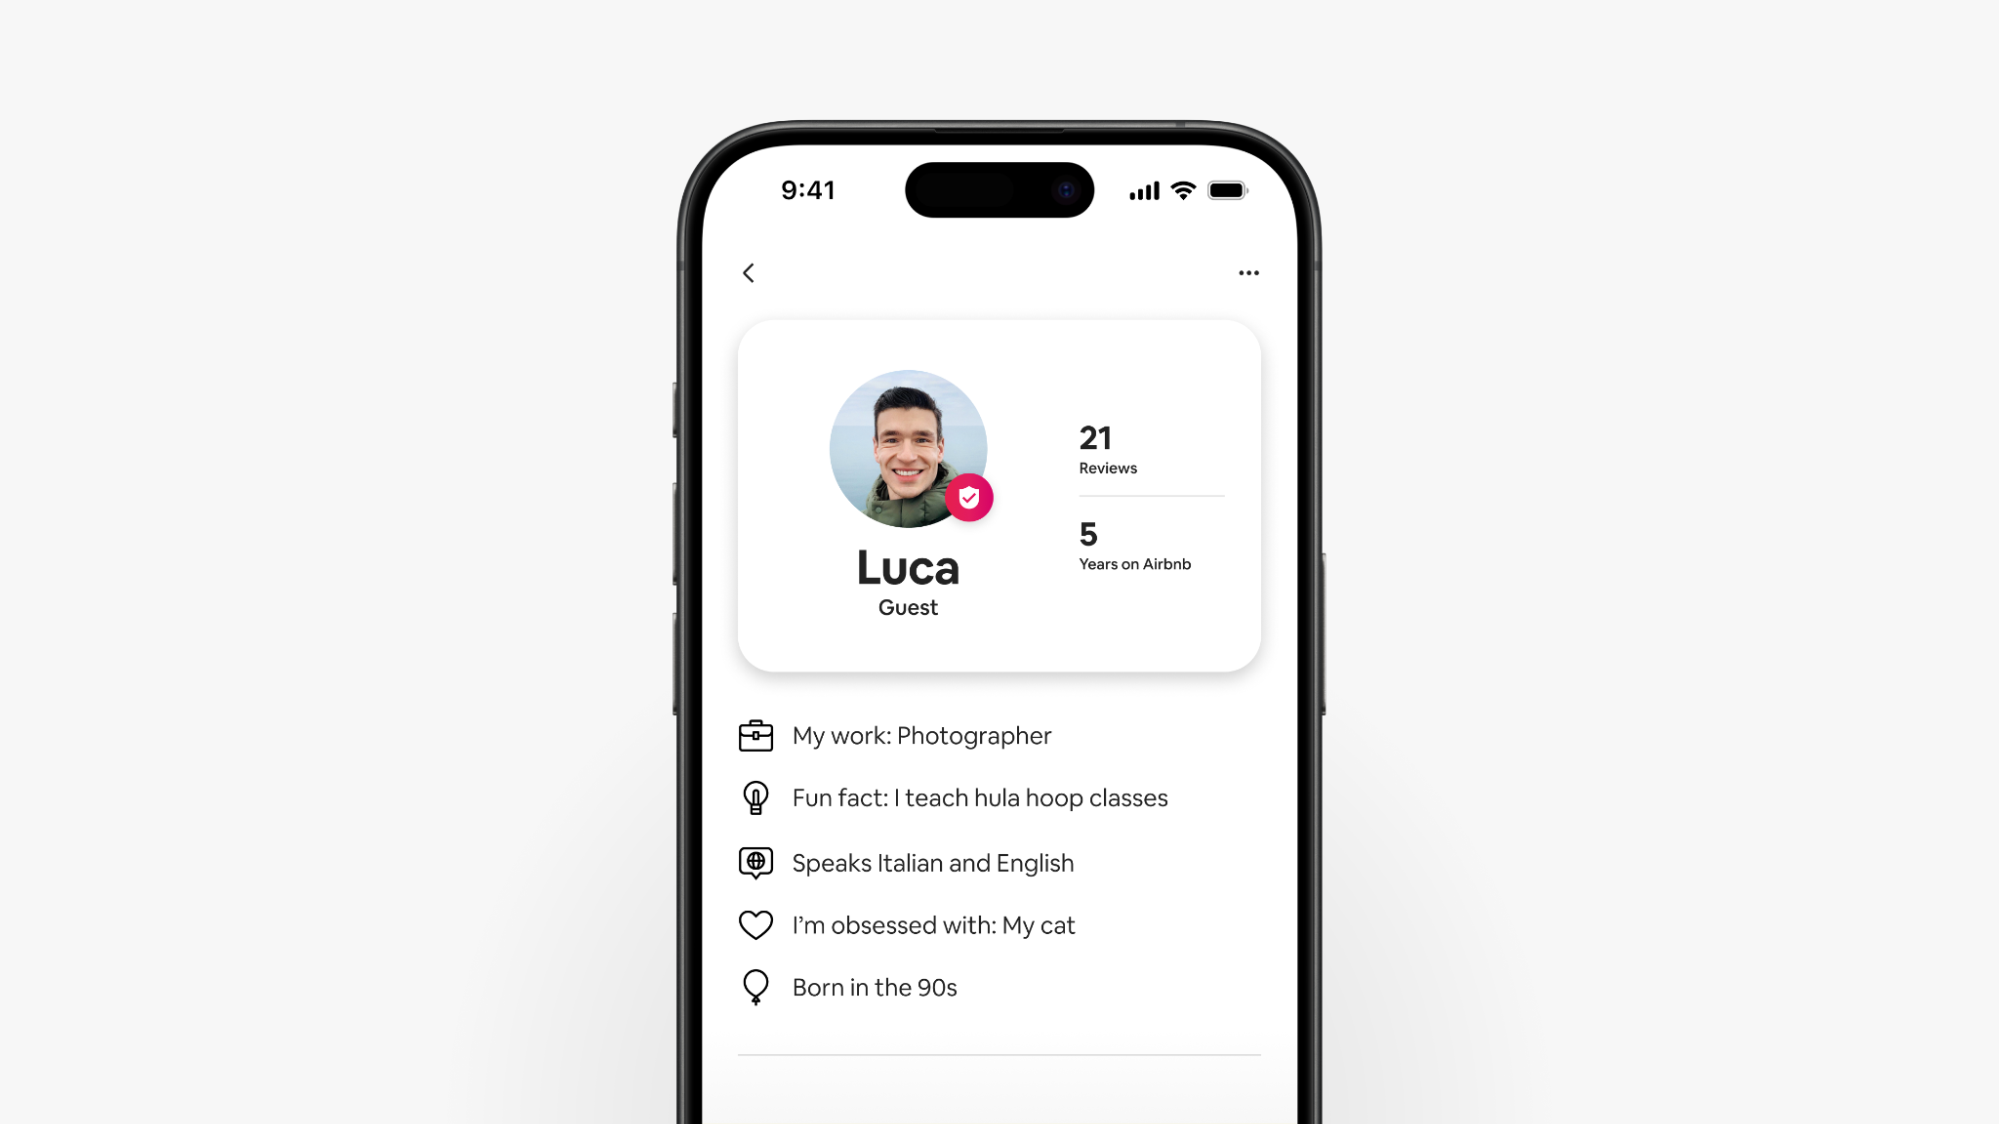 Tangkapan skrin telefon pintar memaparkan profil tetamu Airbnb Luca yang ditingkatkan, yang menunjukkan ulasan dan butiran tentang tetamu.